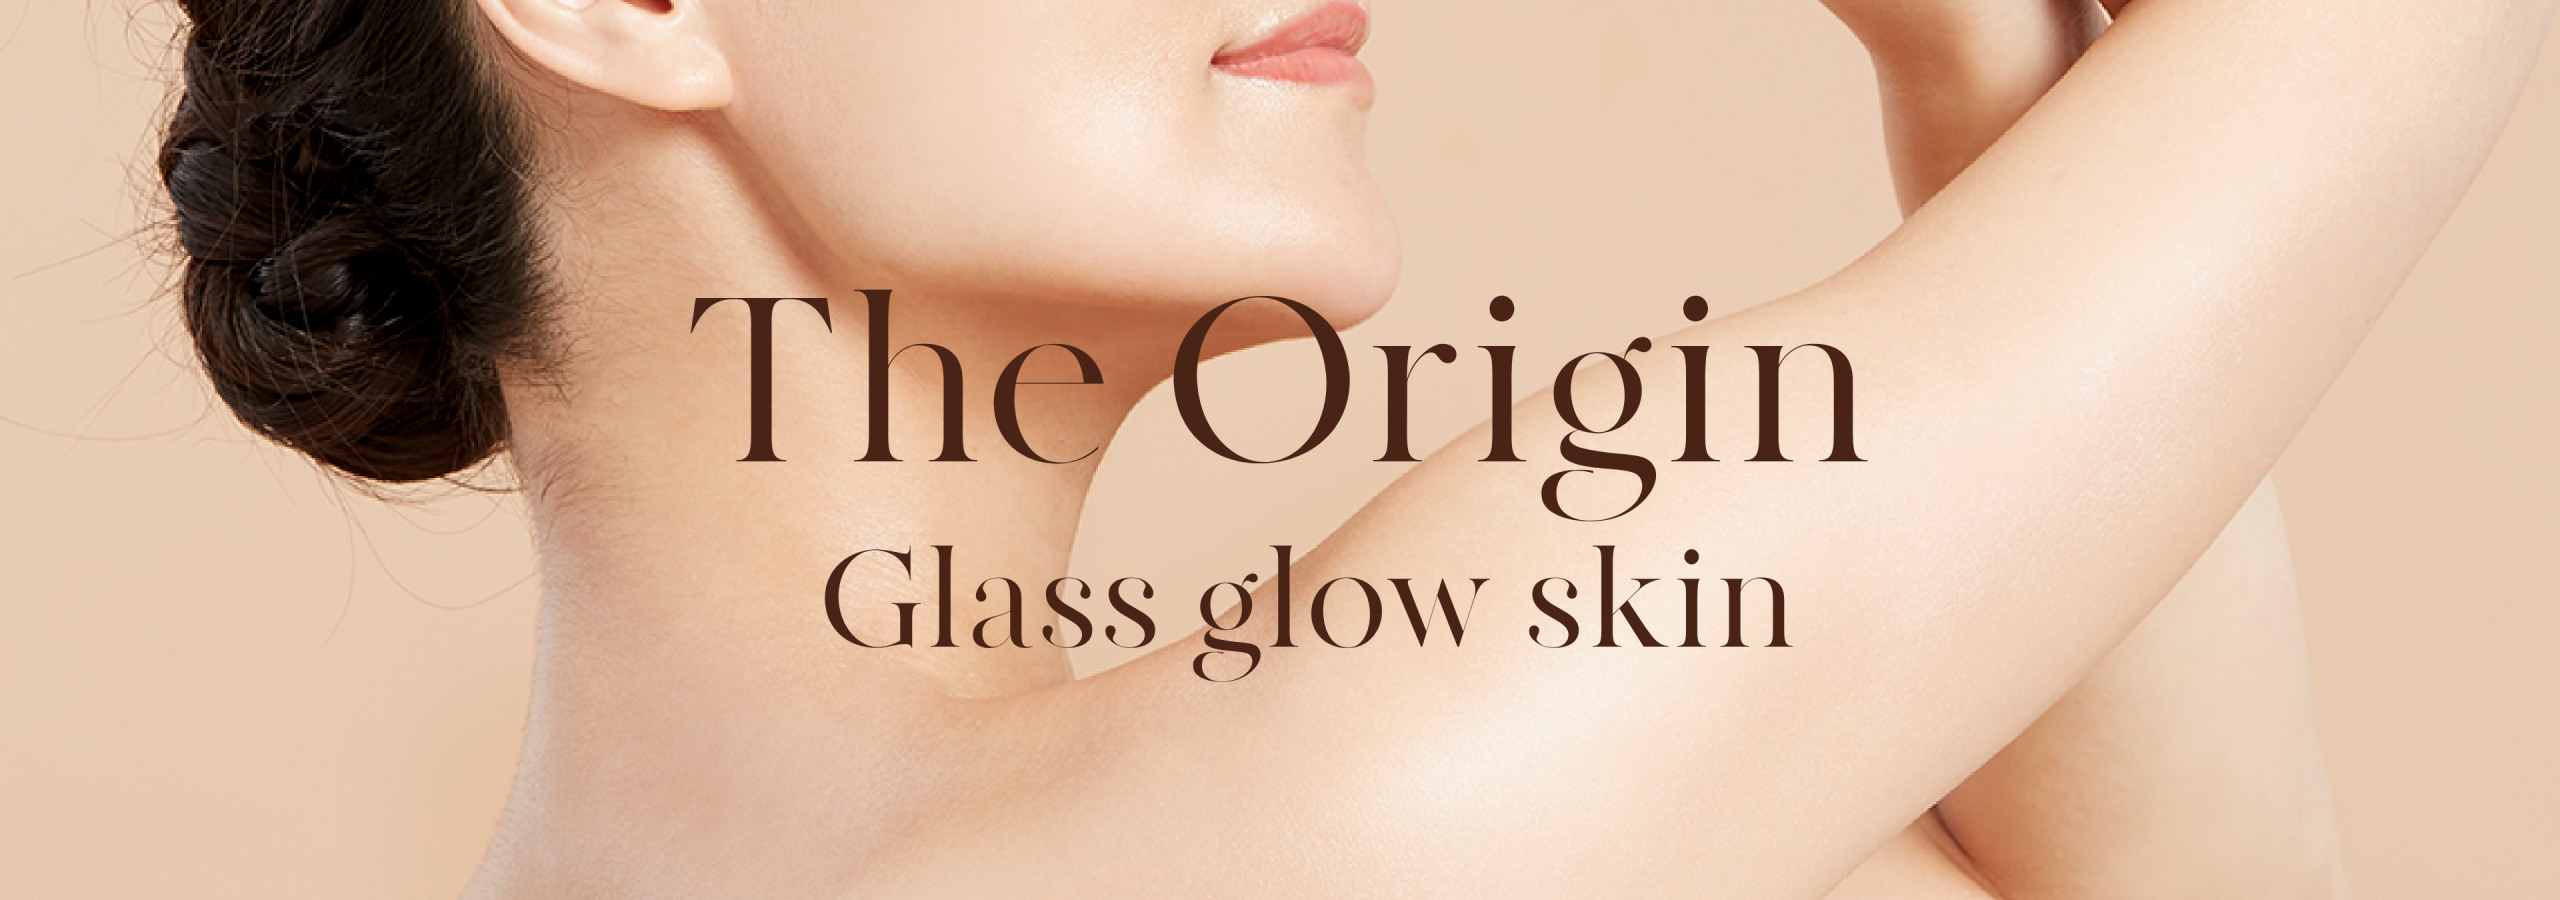 glass glow skin